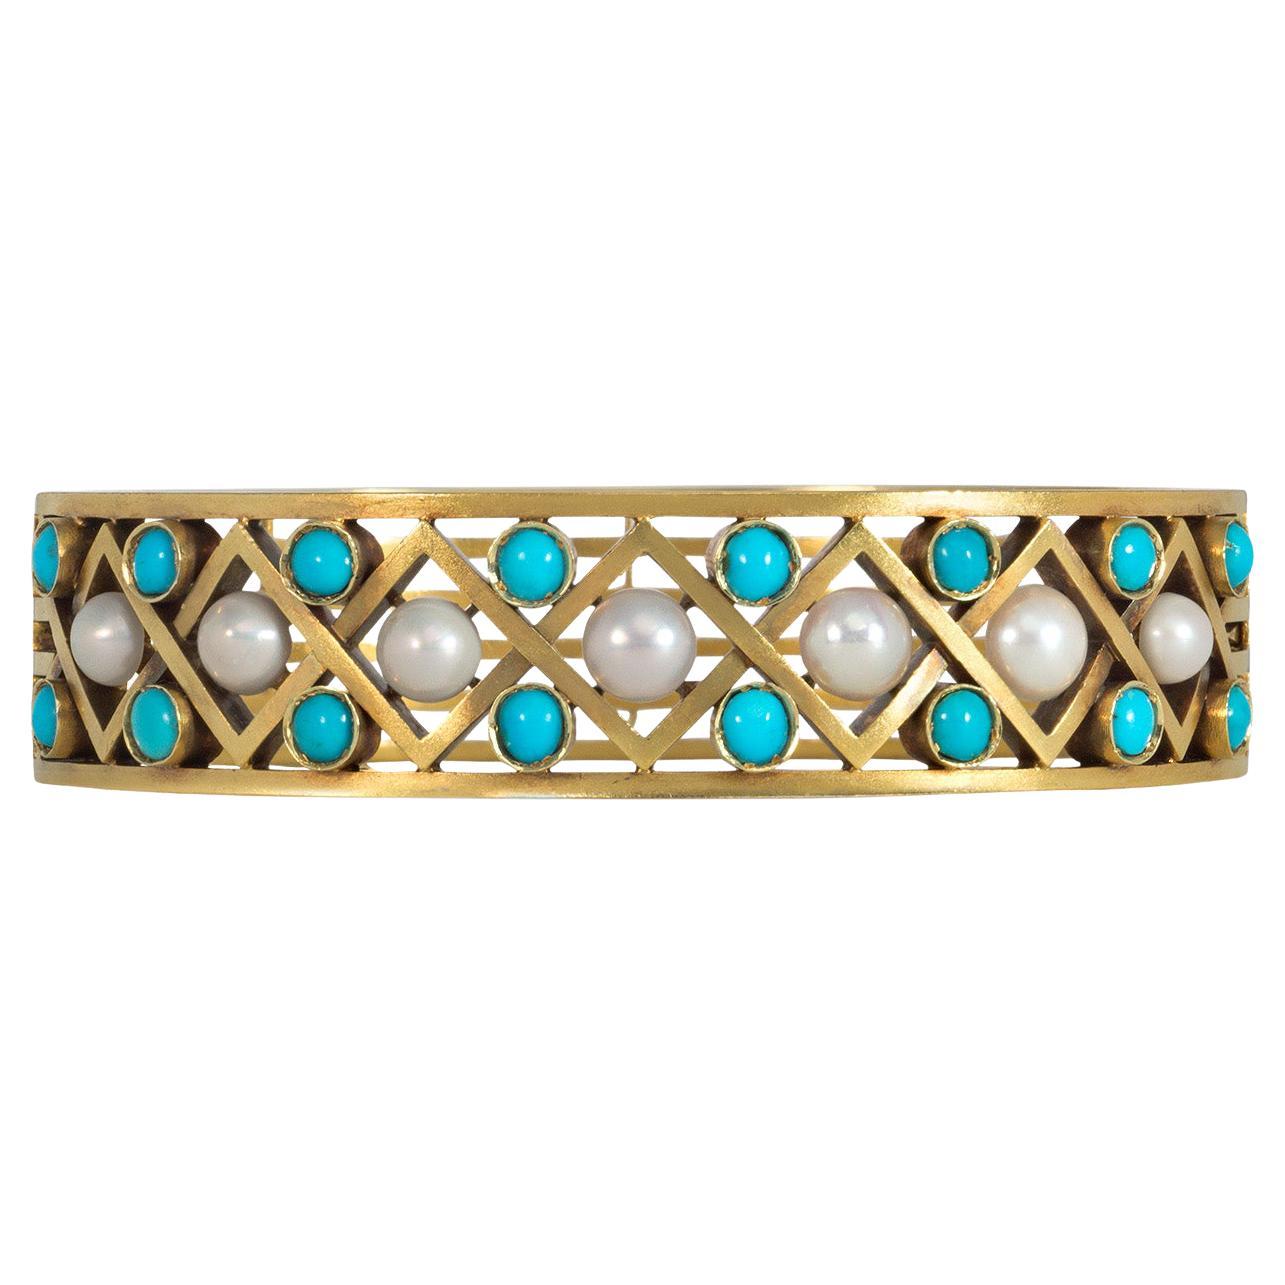 Bracelet ajouré en or, turquoise et perles avec motif en treillis, de style antique